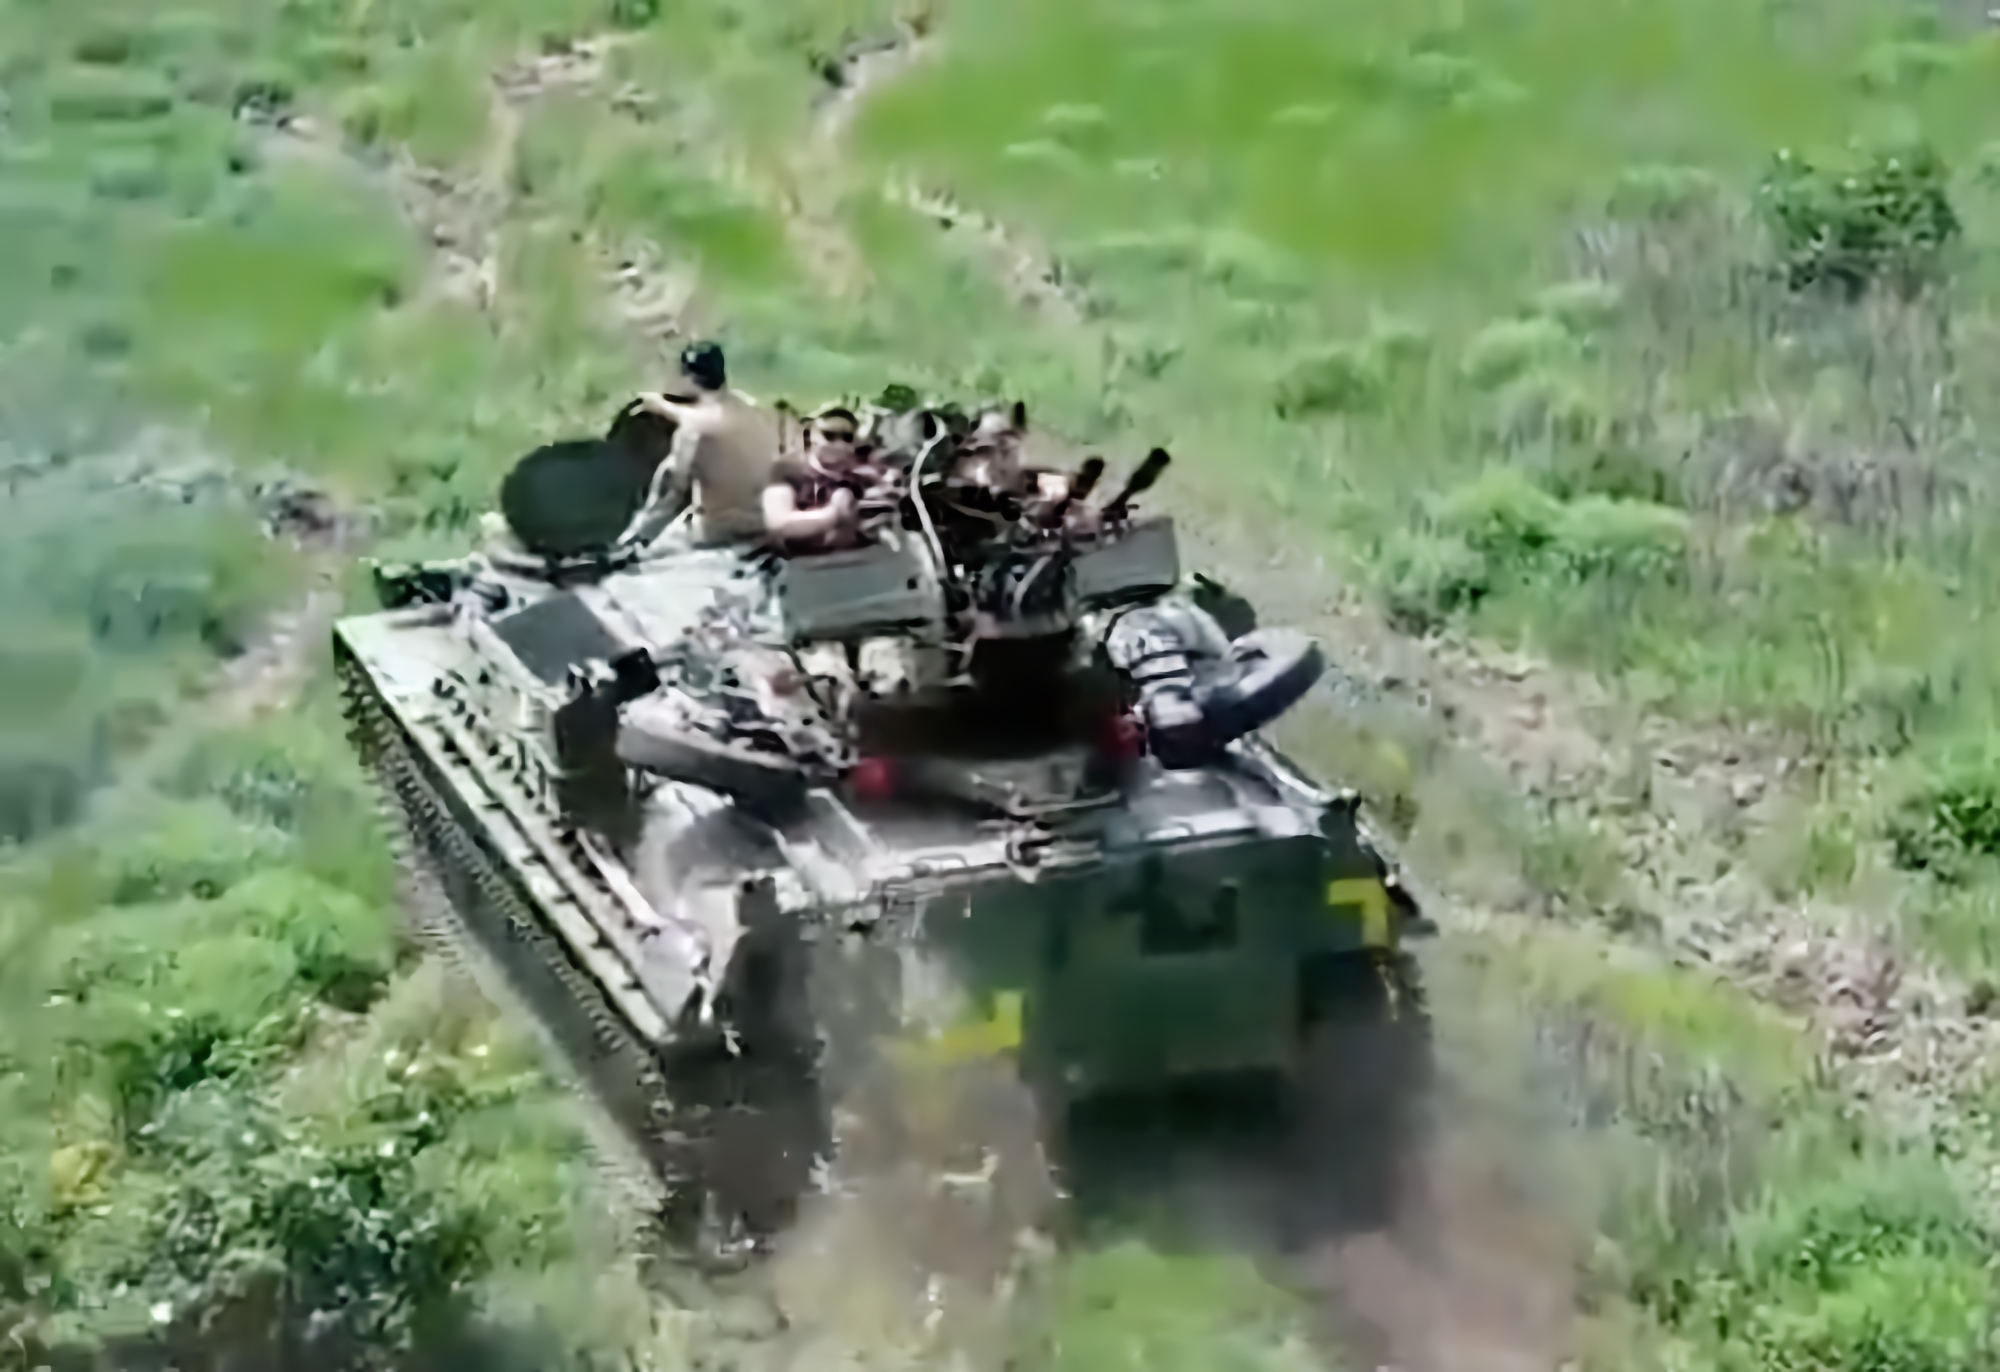 Siły Zbrojne Ukrainy zajęły rosyjski transporter opancerzony MT-LBVM, zainstalowały na nim działo przeciwlotnicze ZU-23-2 i odesłały je z powrotem na front